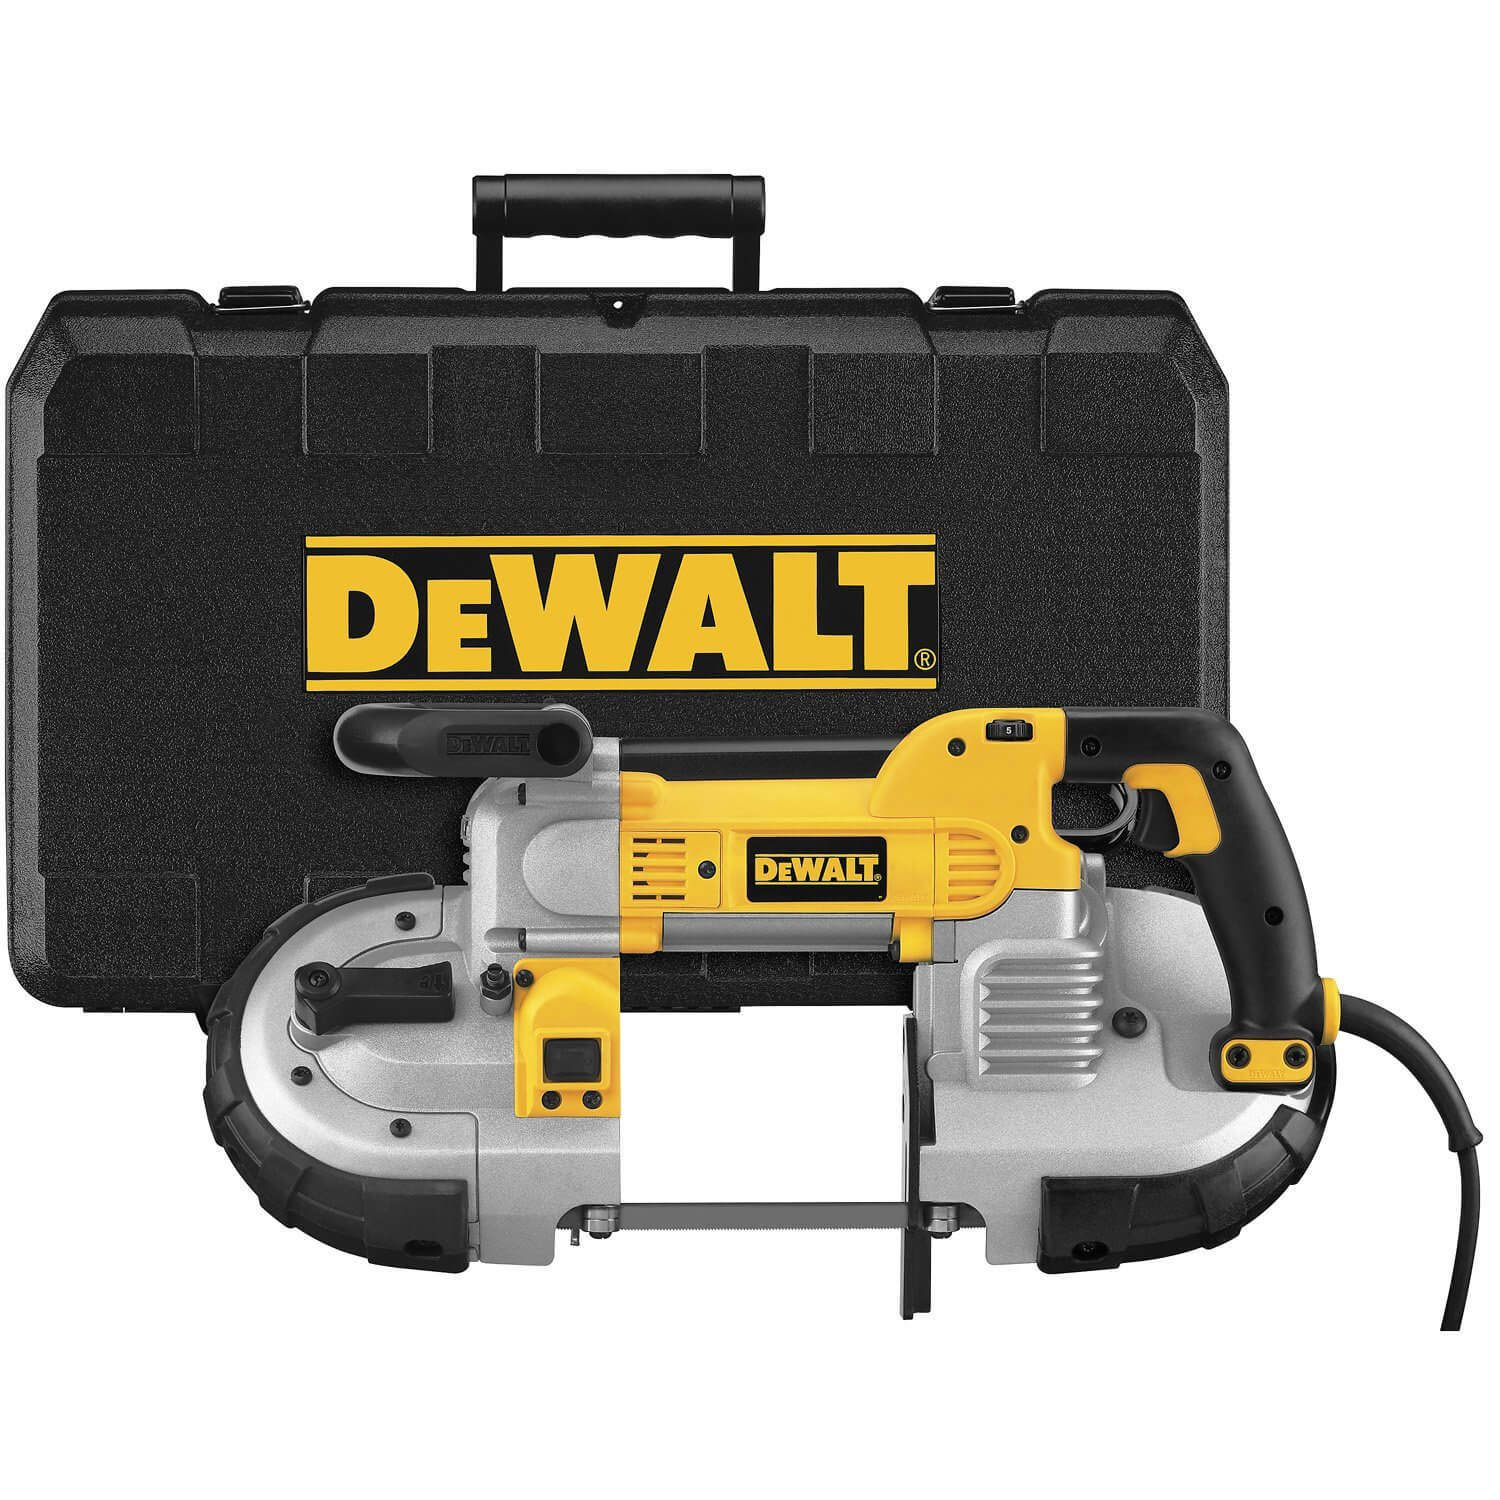 DEWALT DWM120K 10 Amp 5-Inch Deep Cut Portable Band Saw Kit